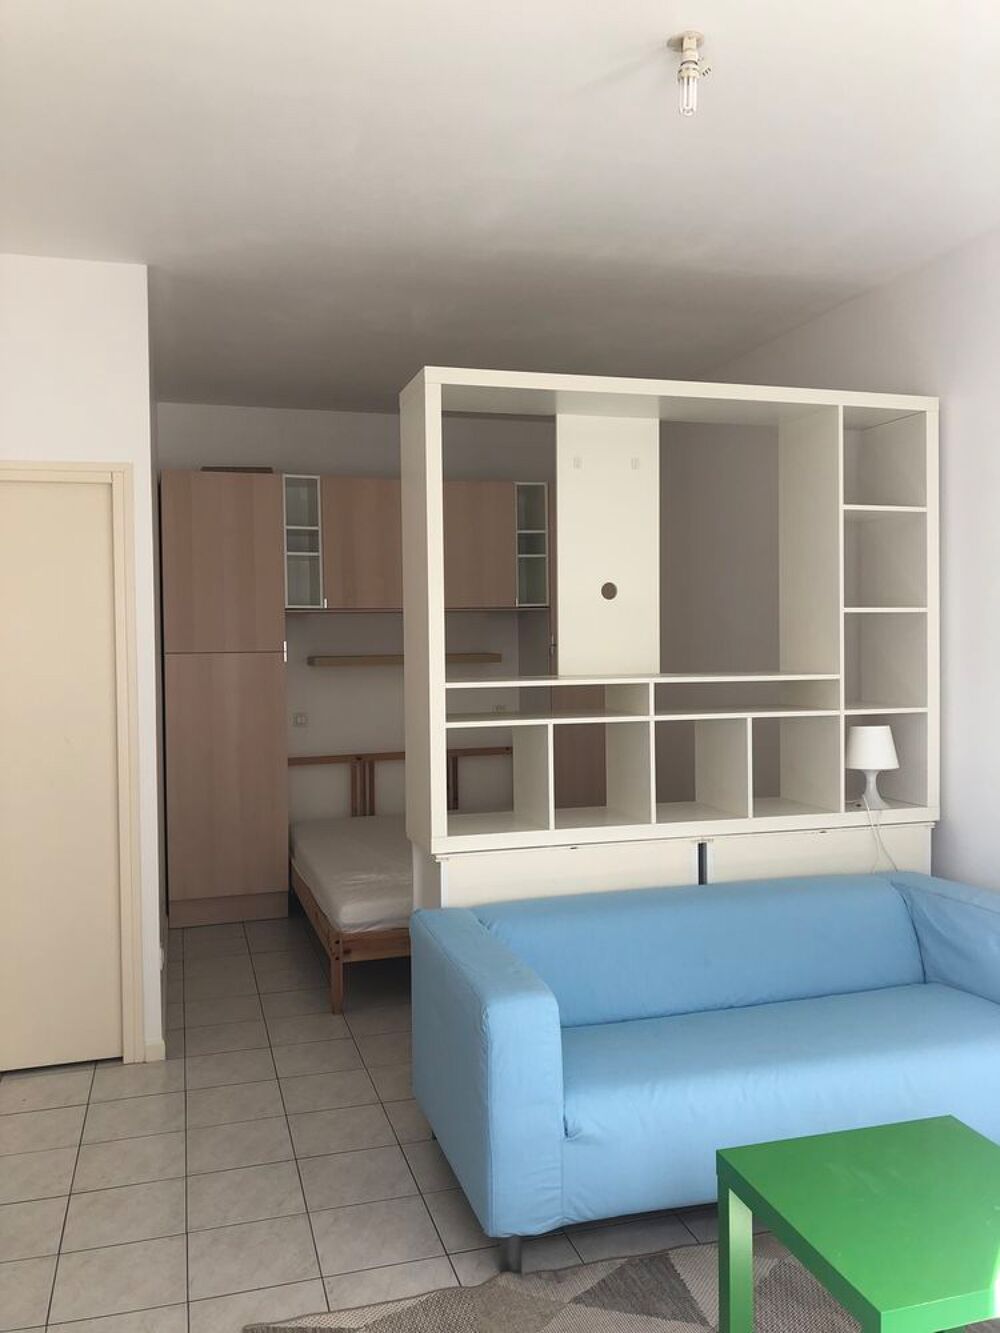 Location Appartement Location - Appartement meubl - 30 m - Reims (51100) - 580  HC Reims